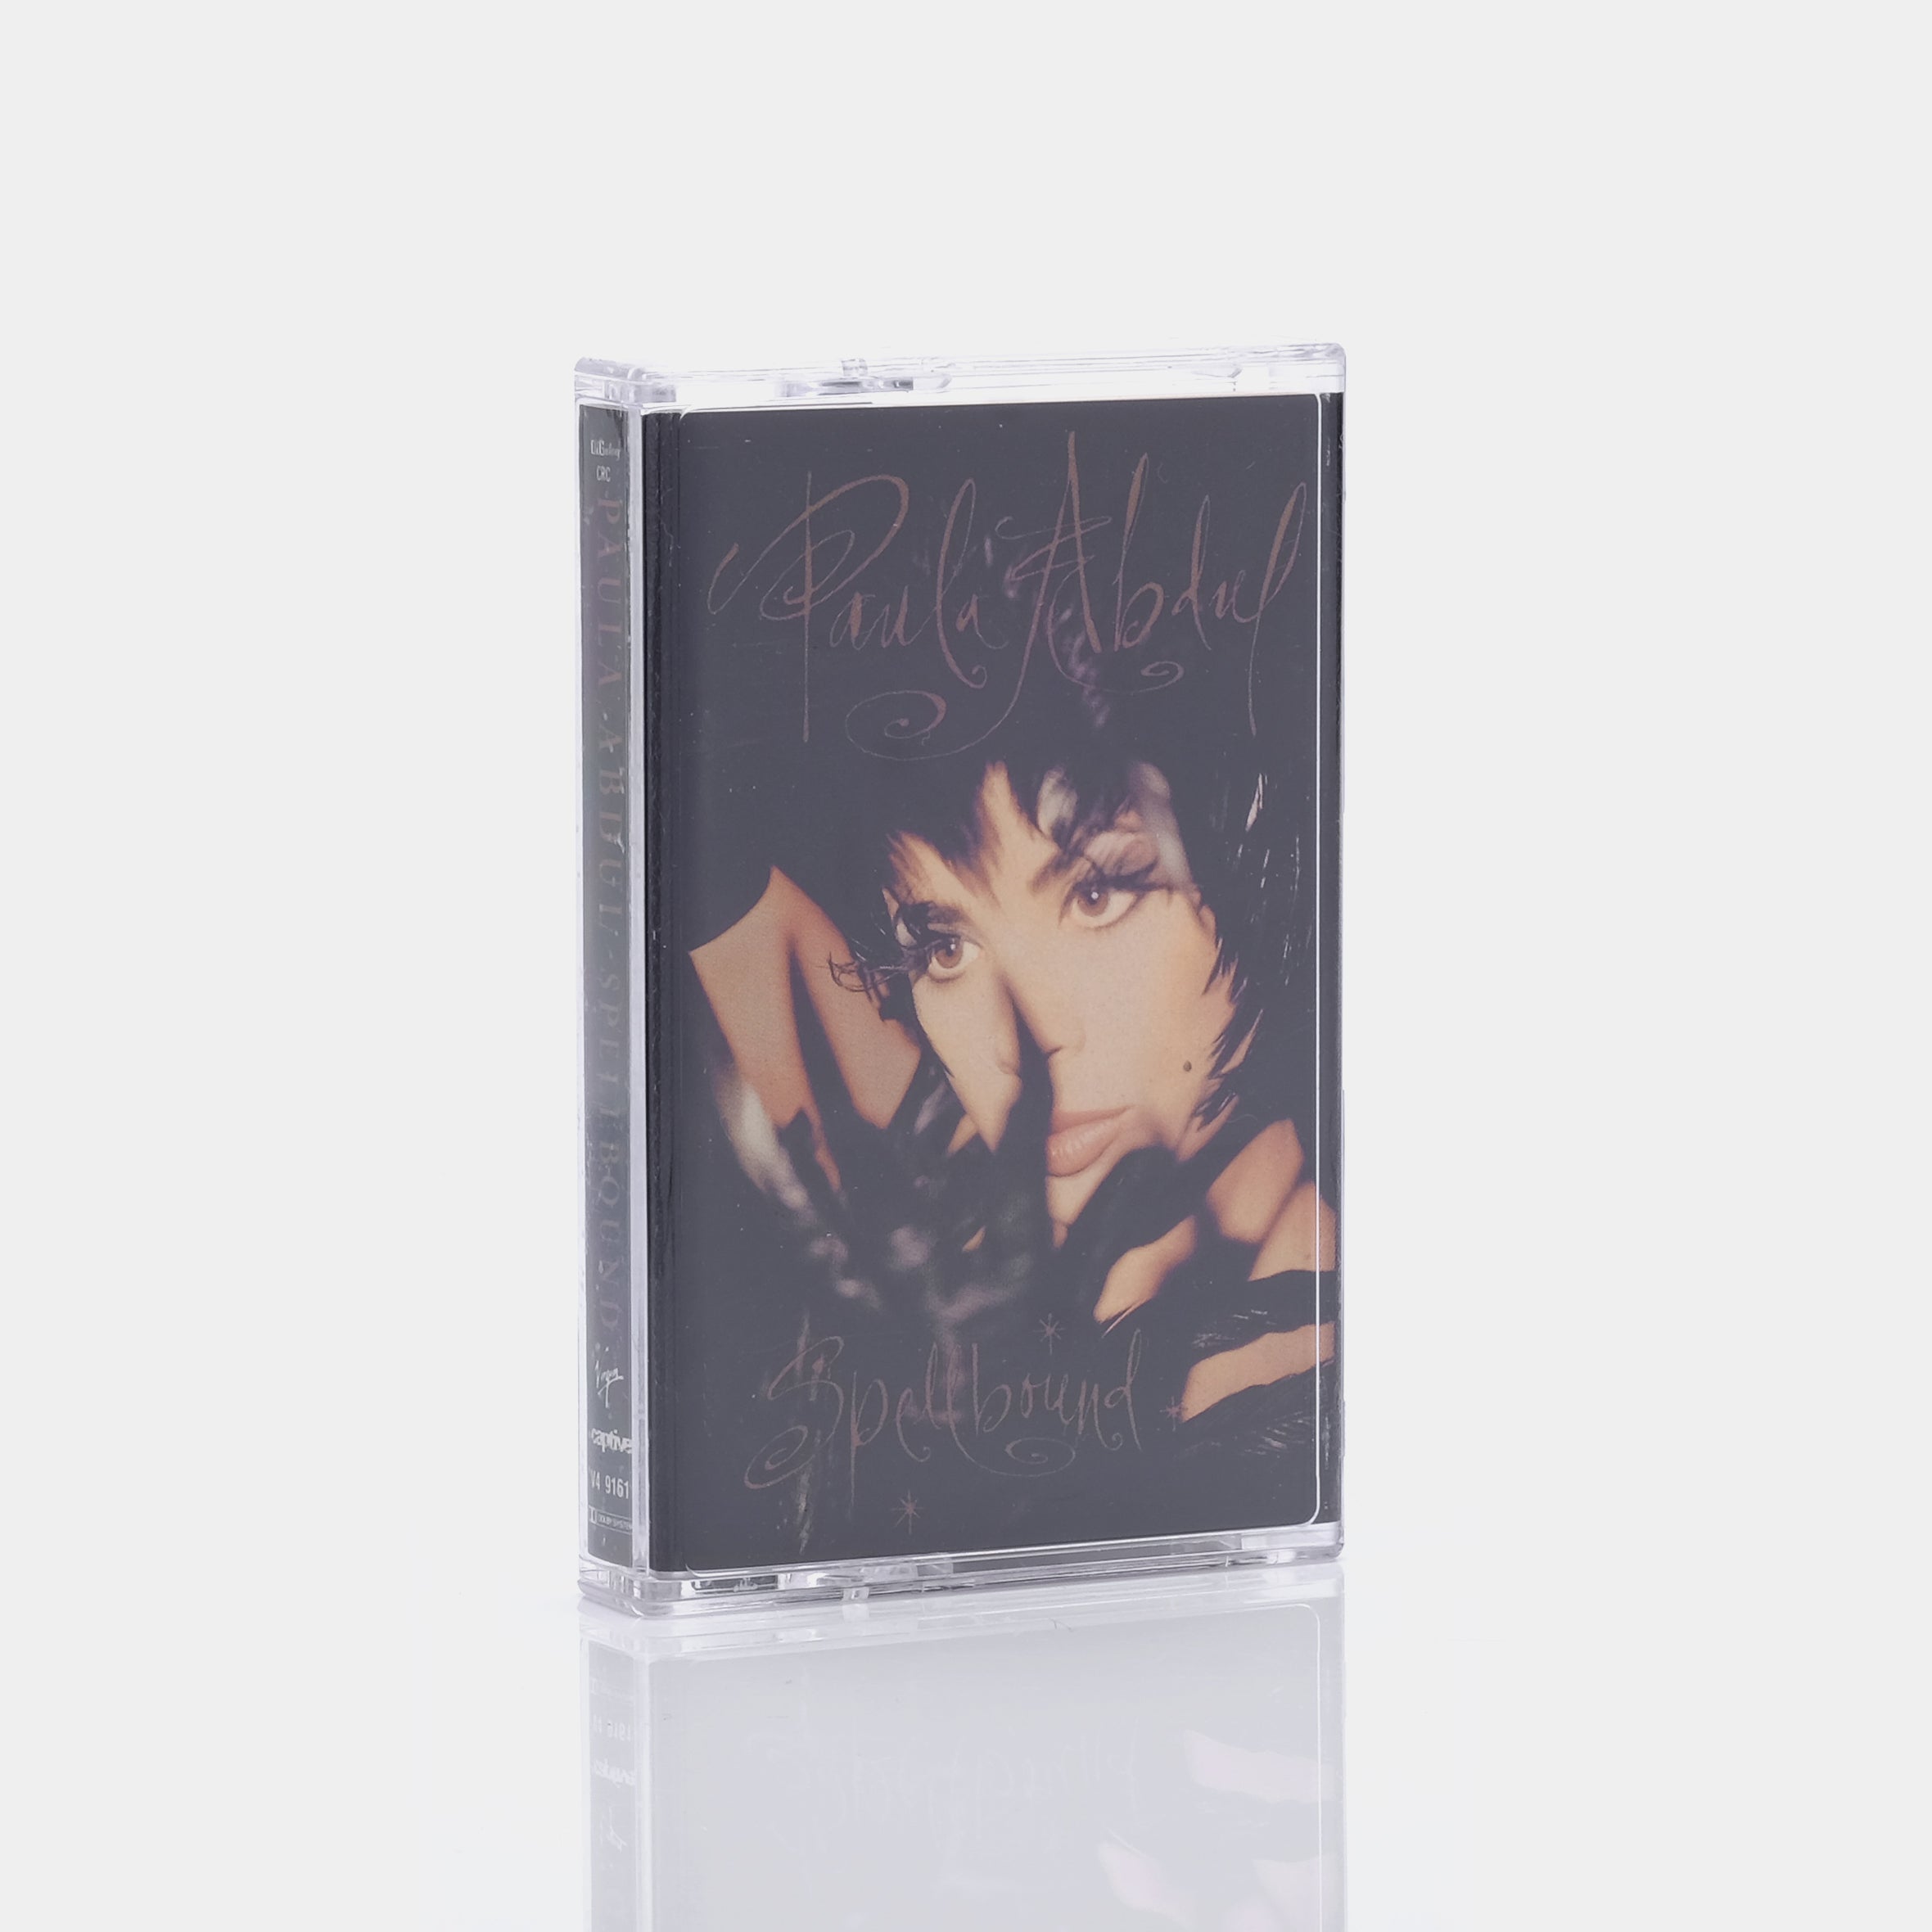 Paula Abdul - Spellbound Cassette Tape